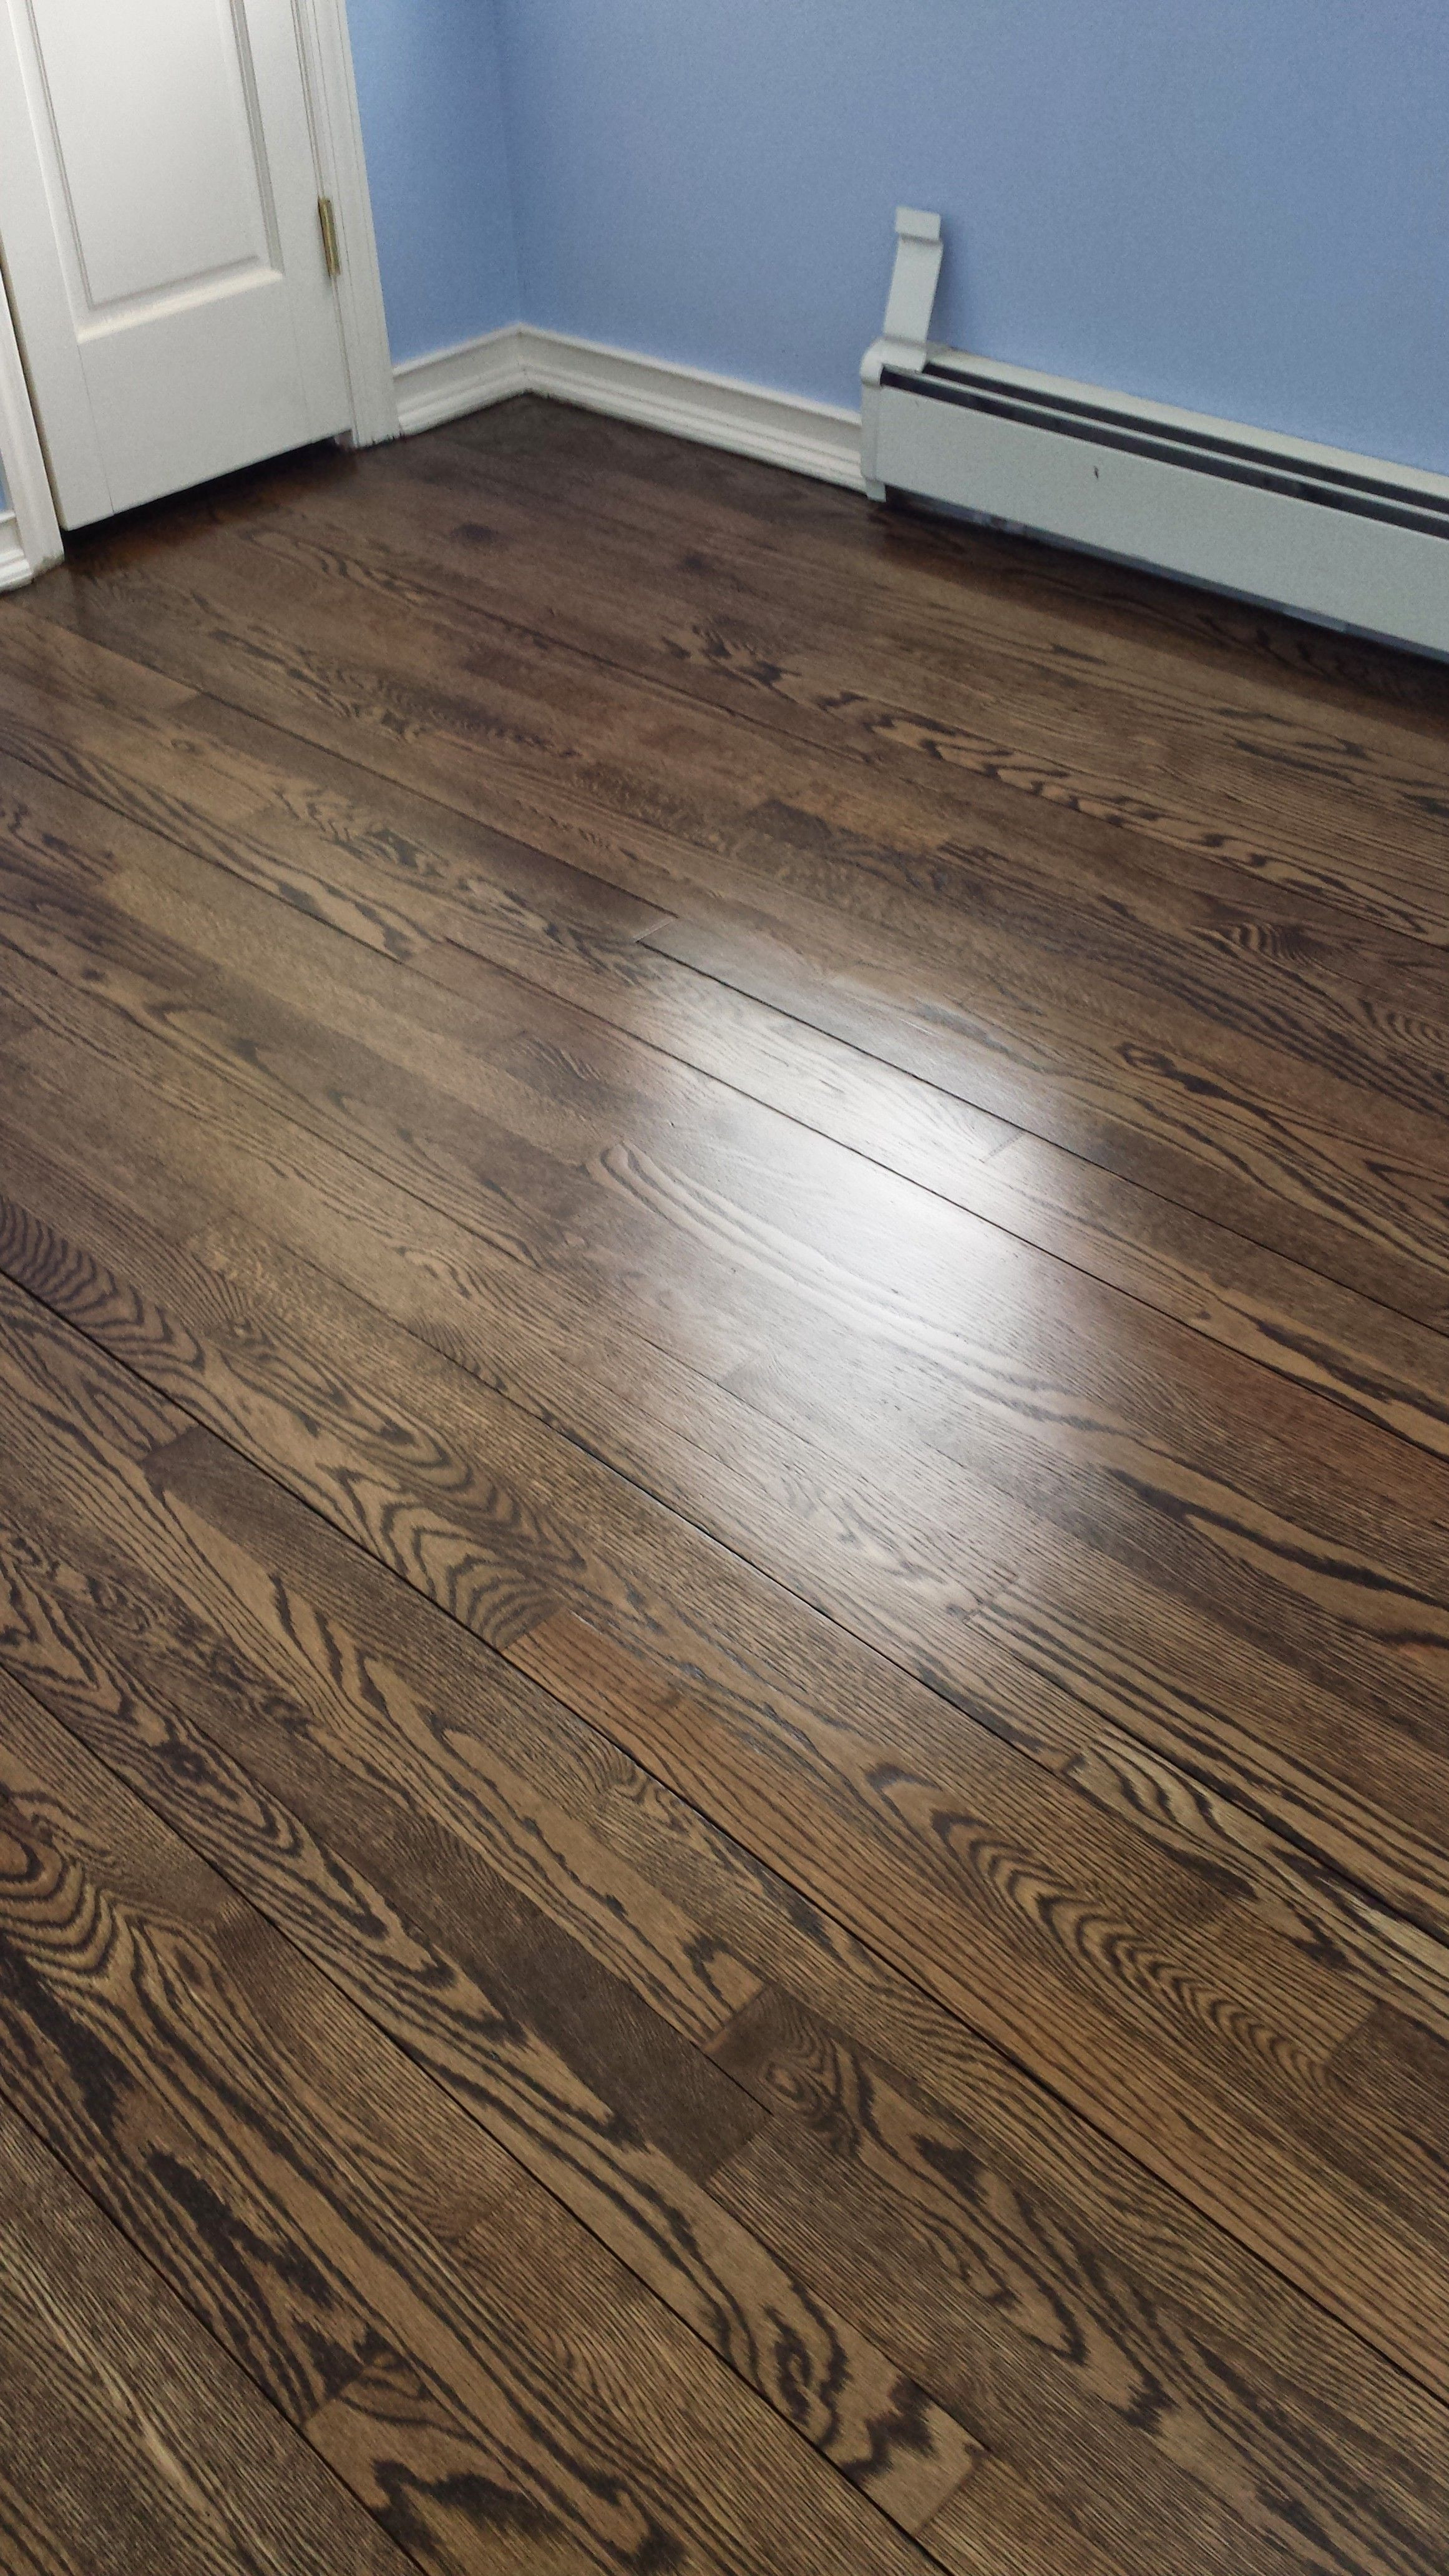 white oak hardwood flooring cost of sanding hardwood floors diy floor in sanding hardwood floors diy great methods to use for refinishing hardwood floors